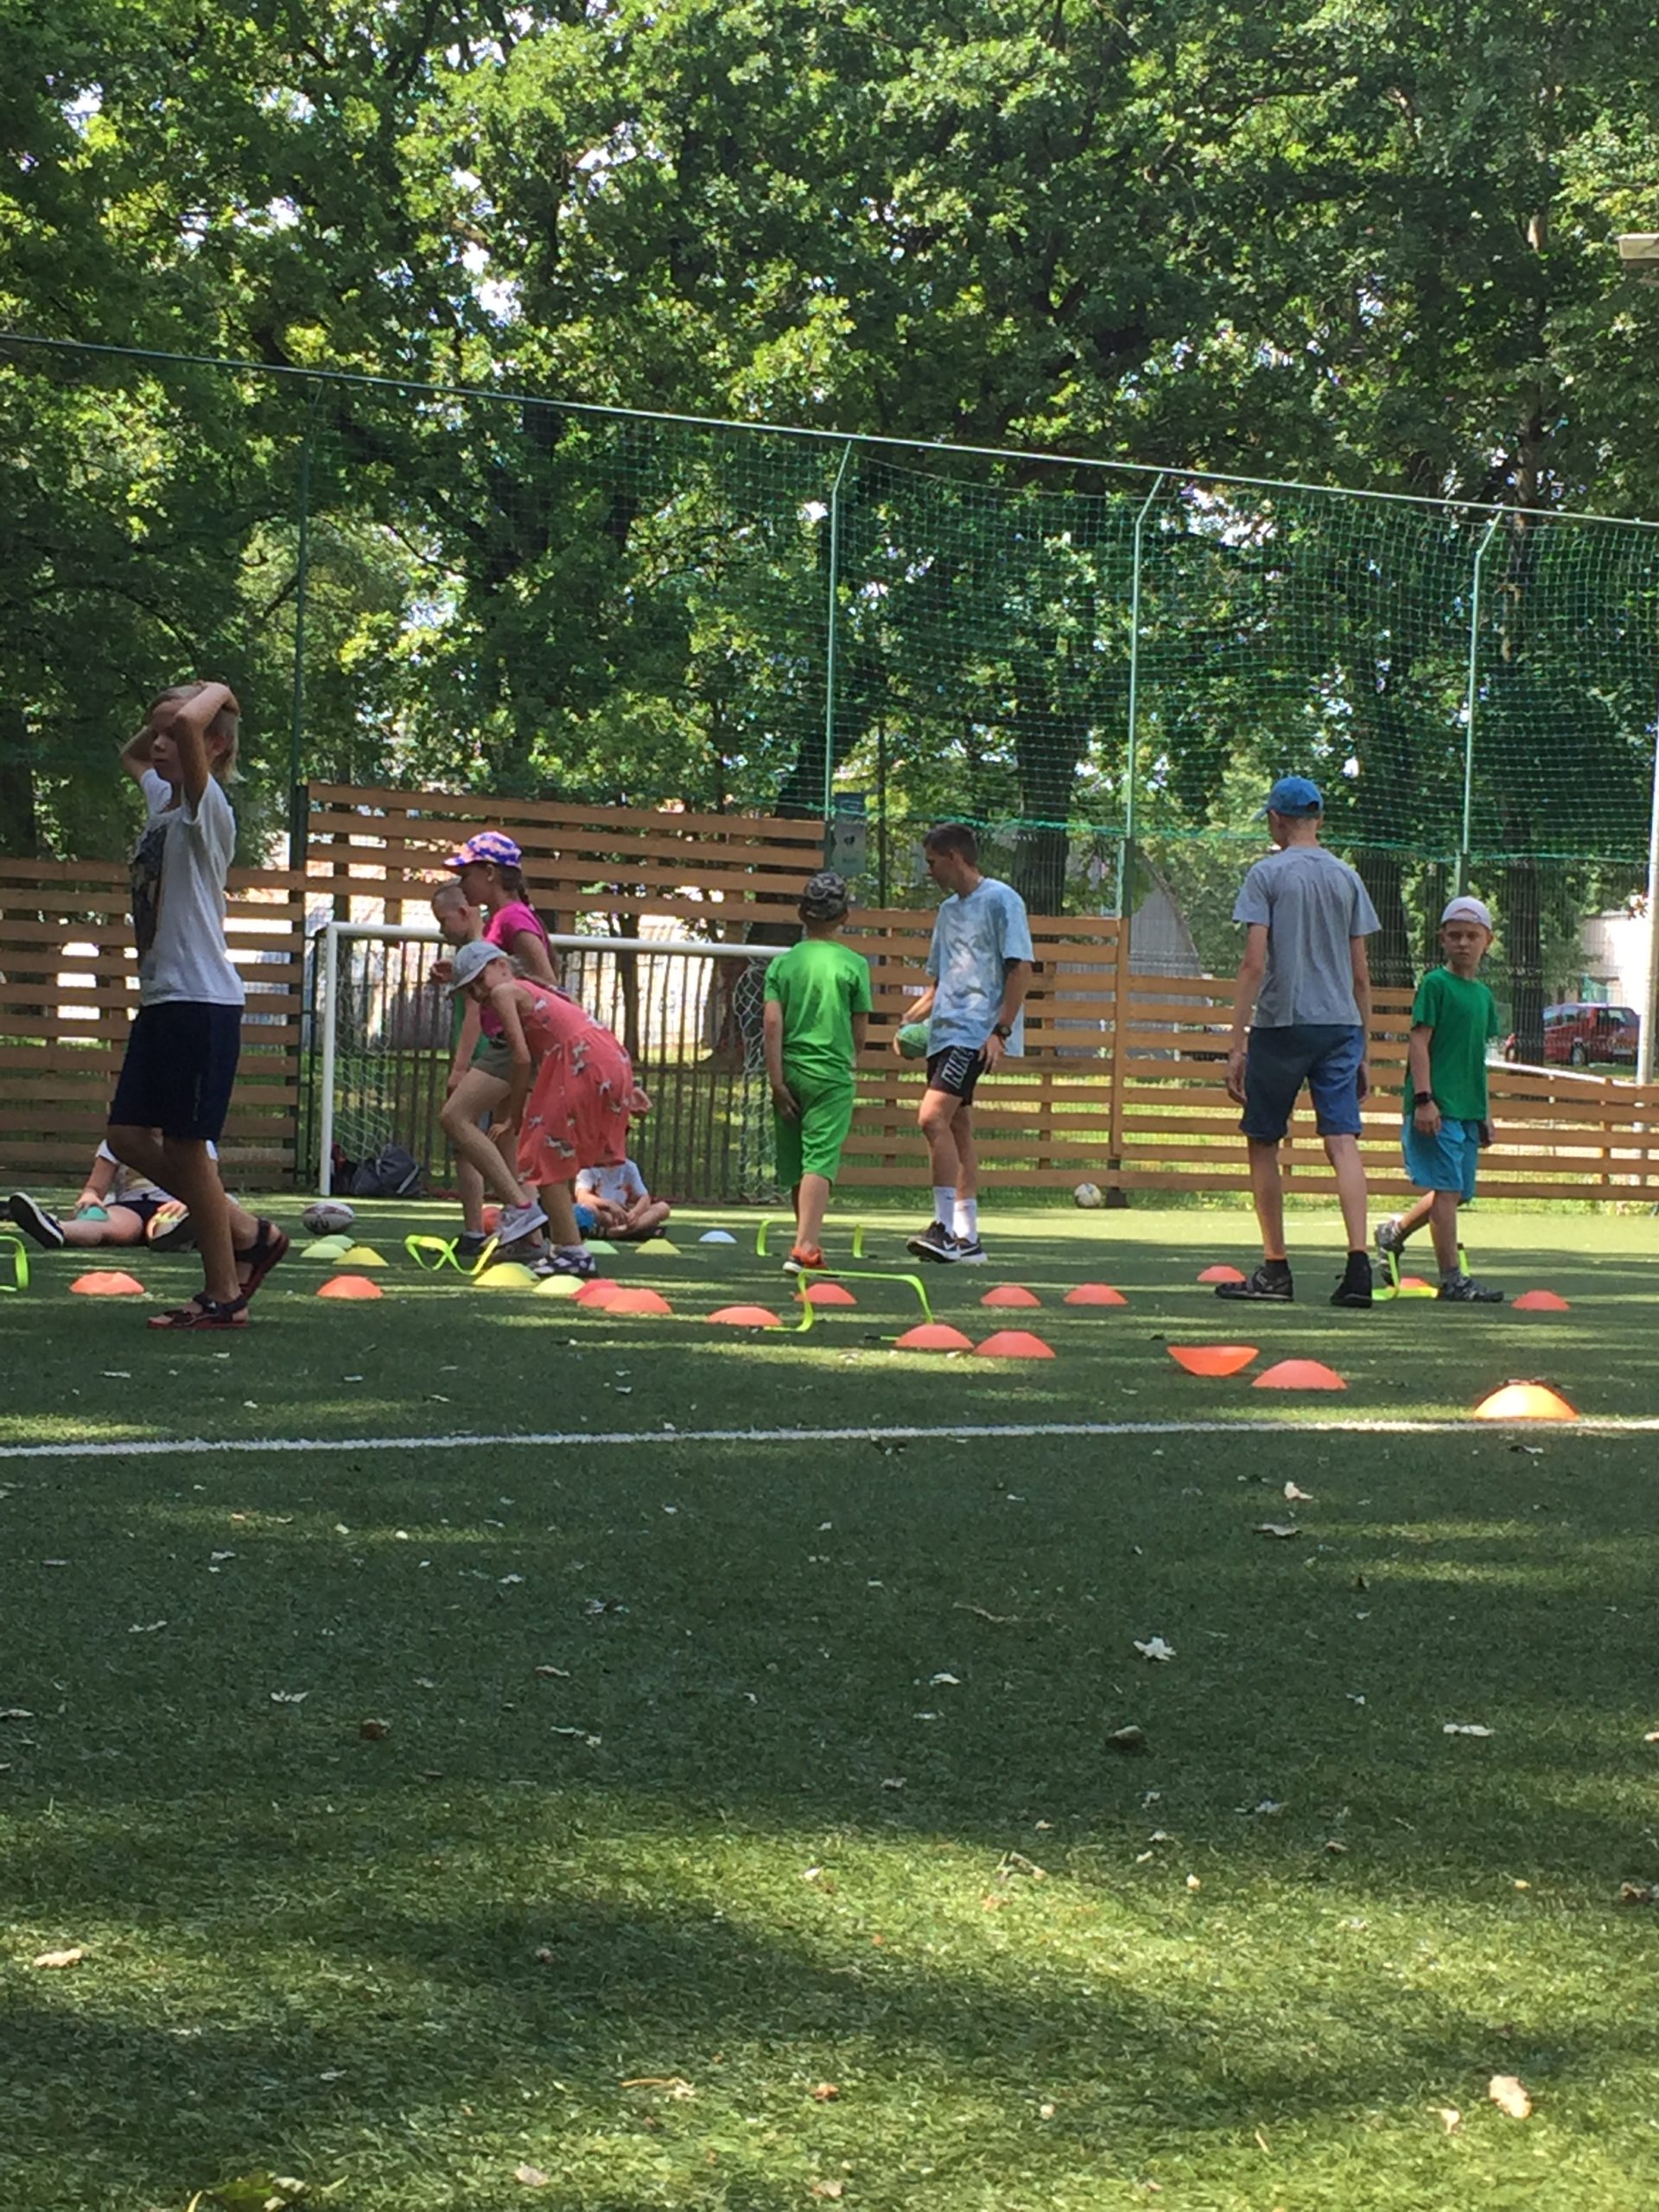 Būrys vaikų futbolo aikštėje žaidžia estafetes